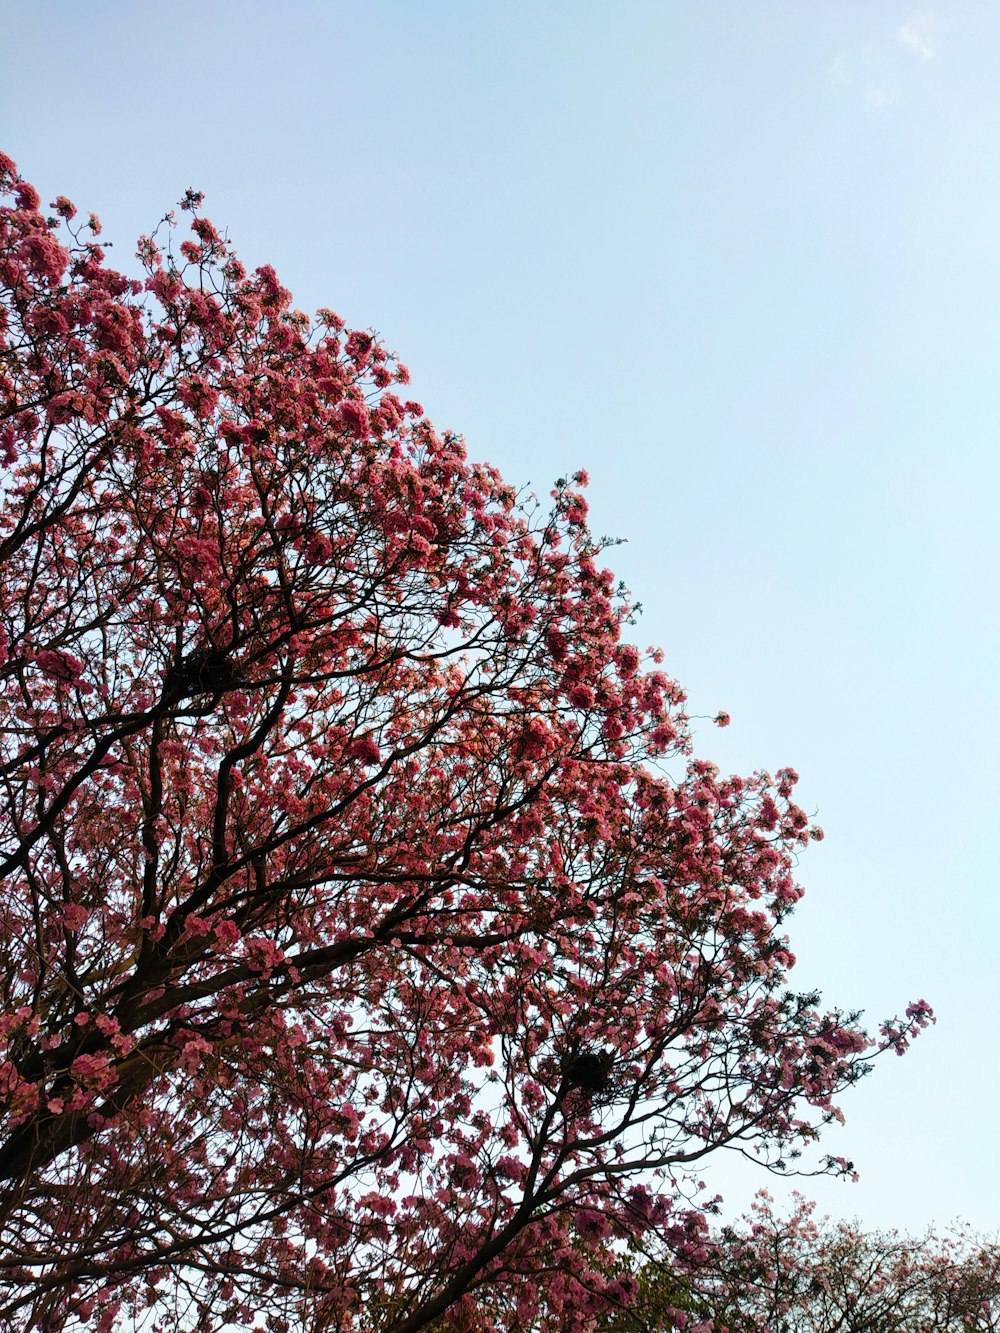 albero a foglia rossa sotto il cielo blu durante il giorno